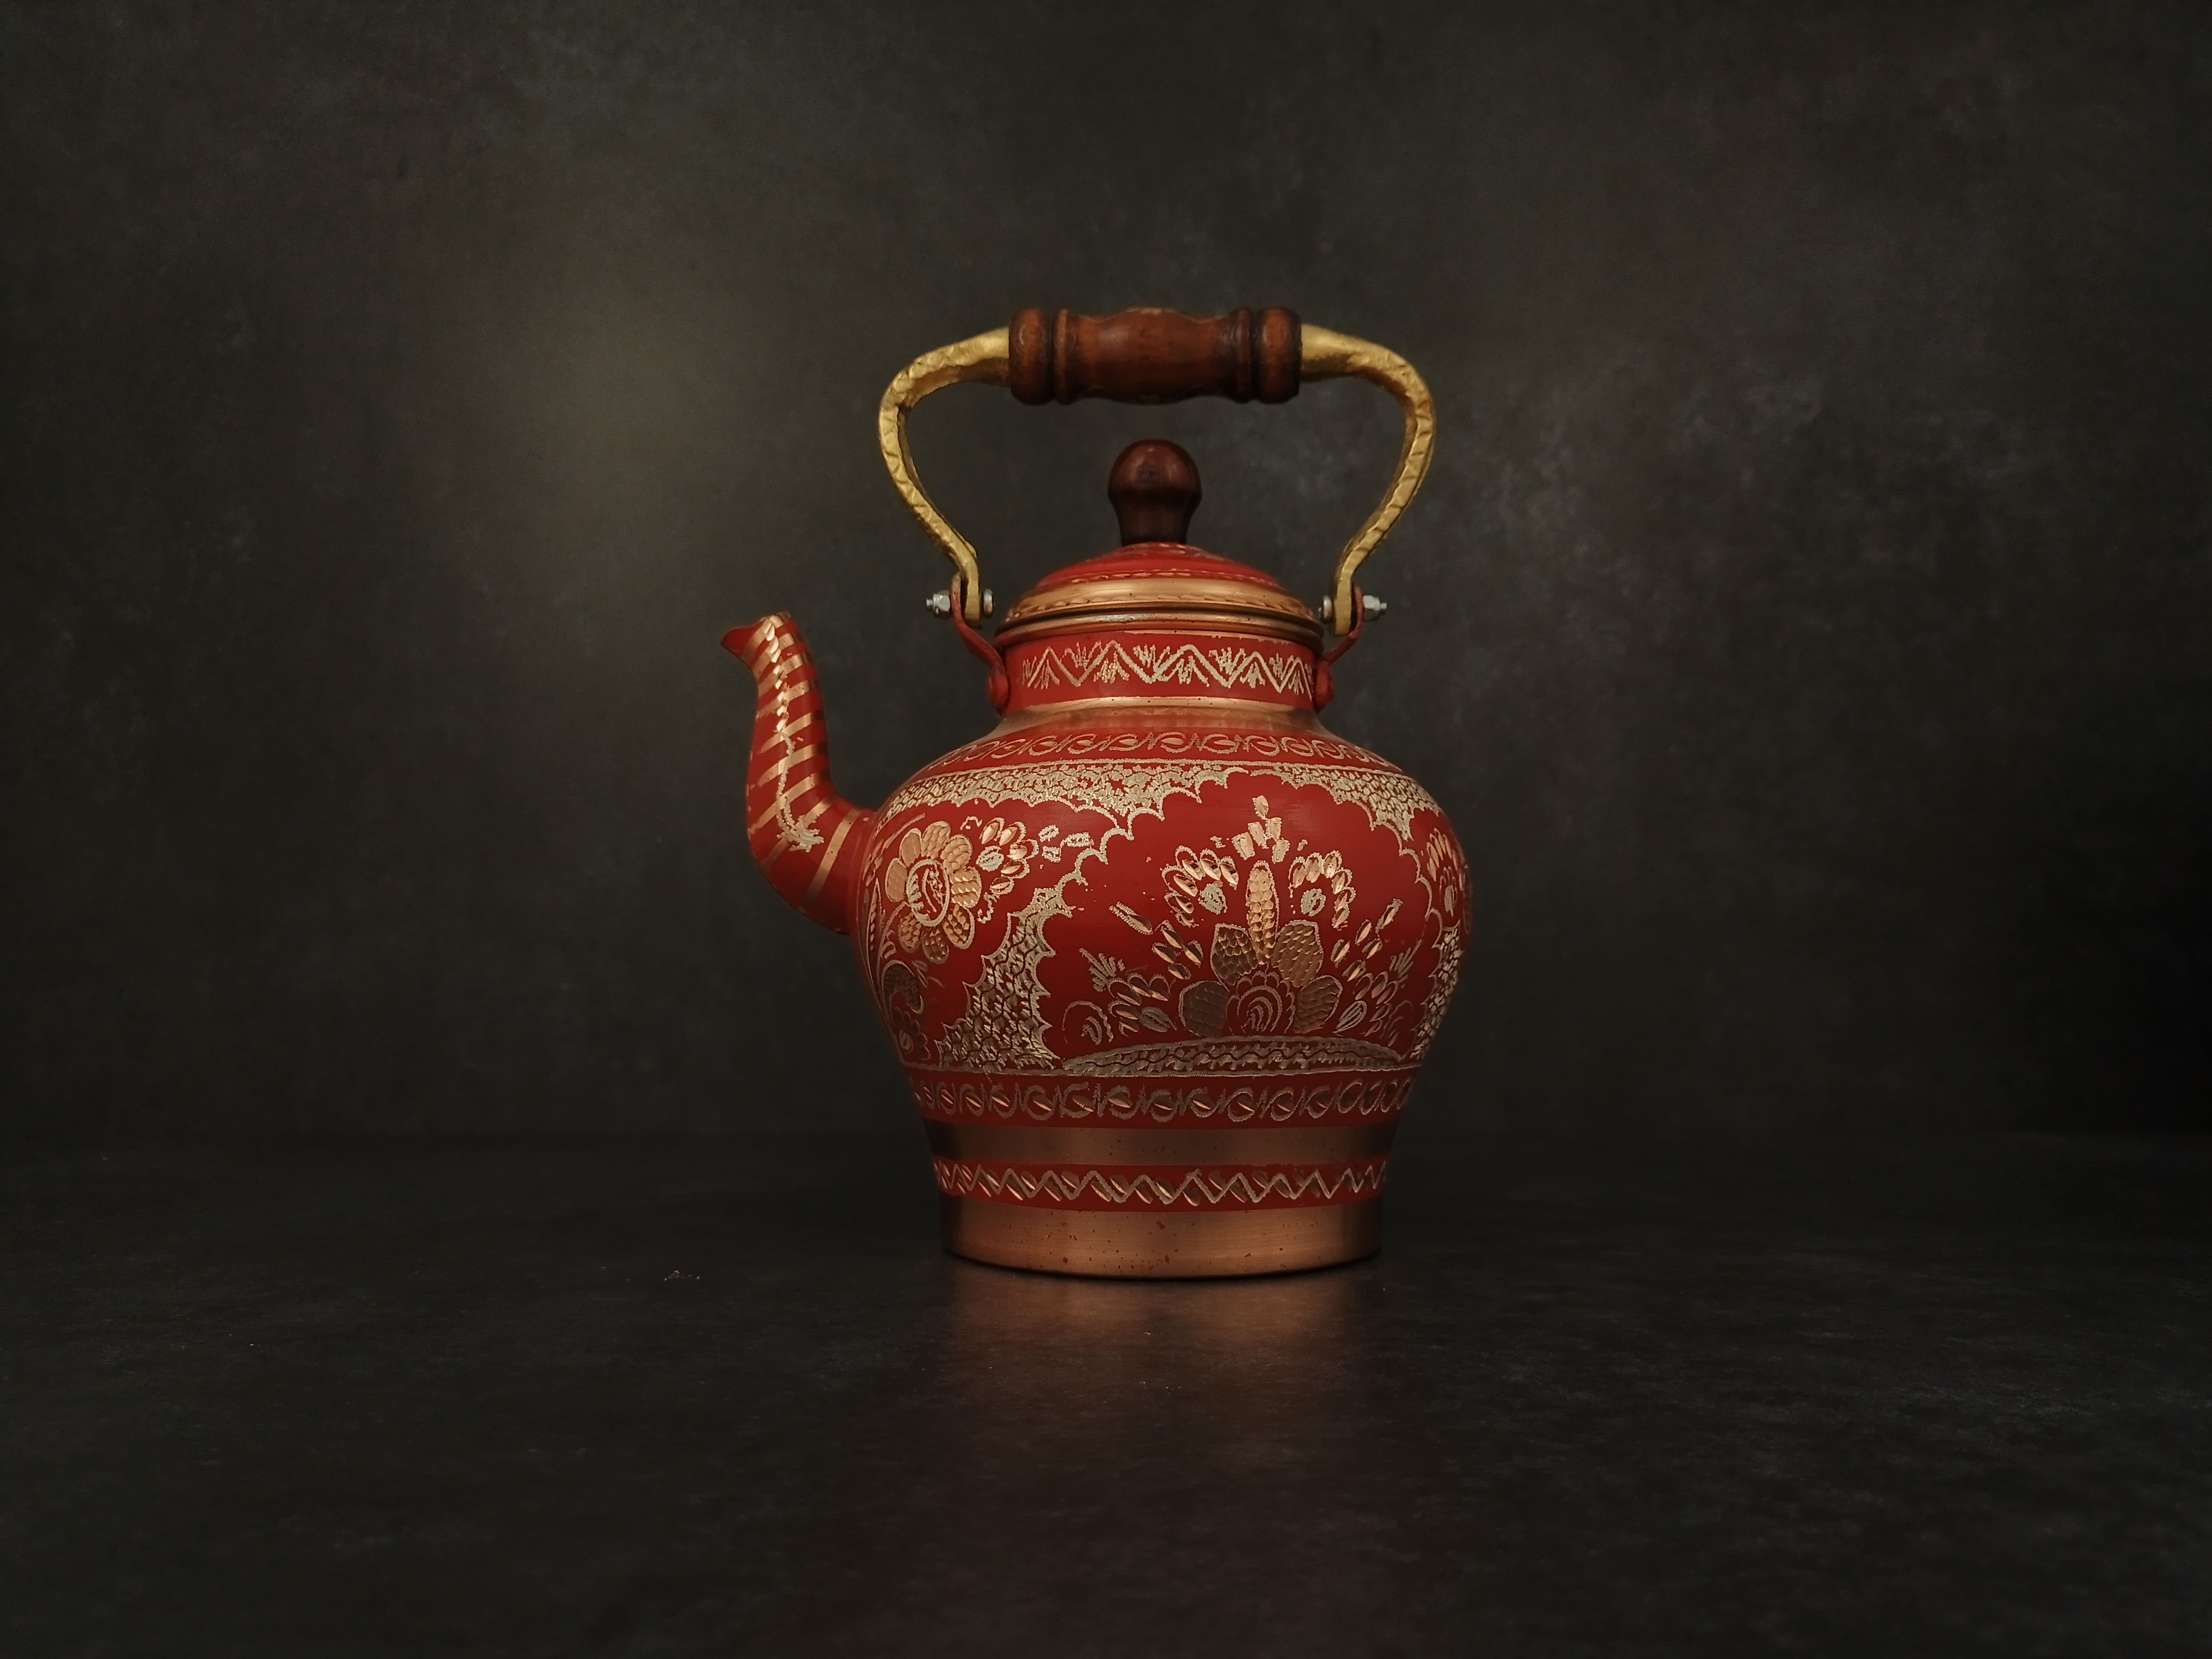 Turkish Handmade Tea Kettle, Engraved Copper Tea Pot, Solid Traditional Design Vintage Design 